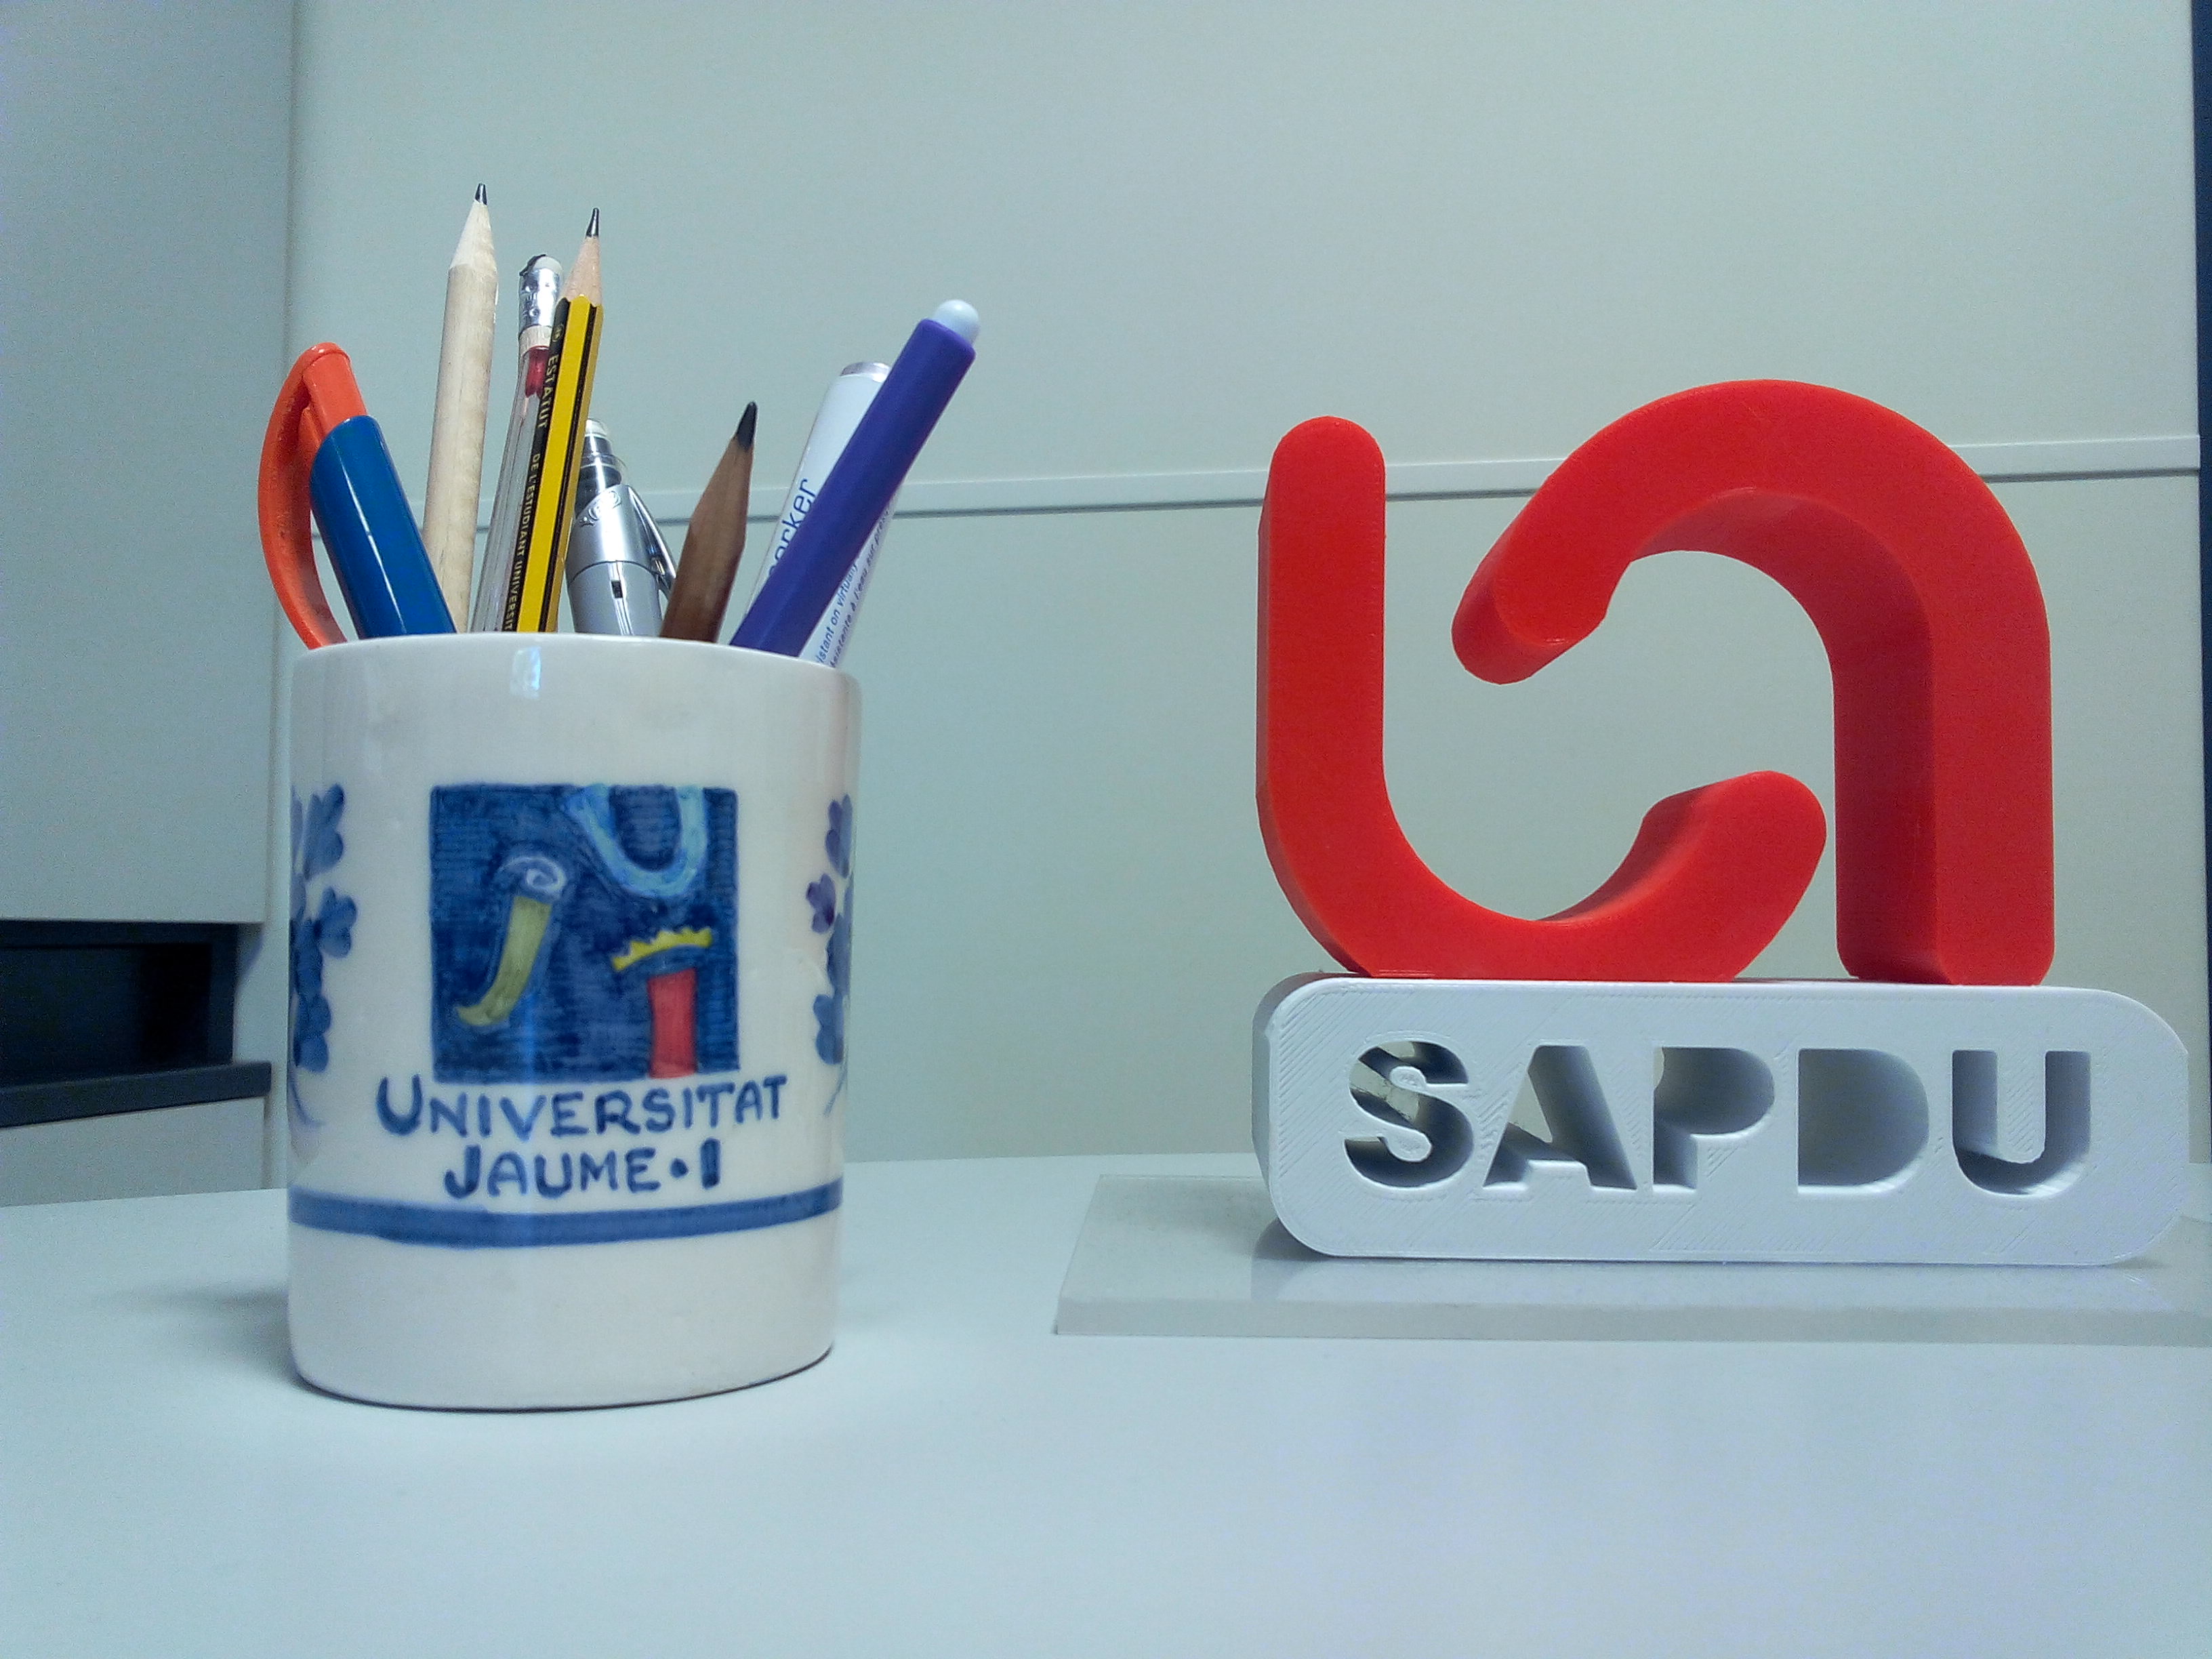 iconos de representación de la Universidad Jaume I y SAPDU